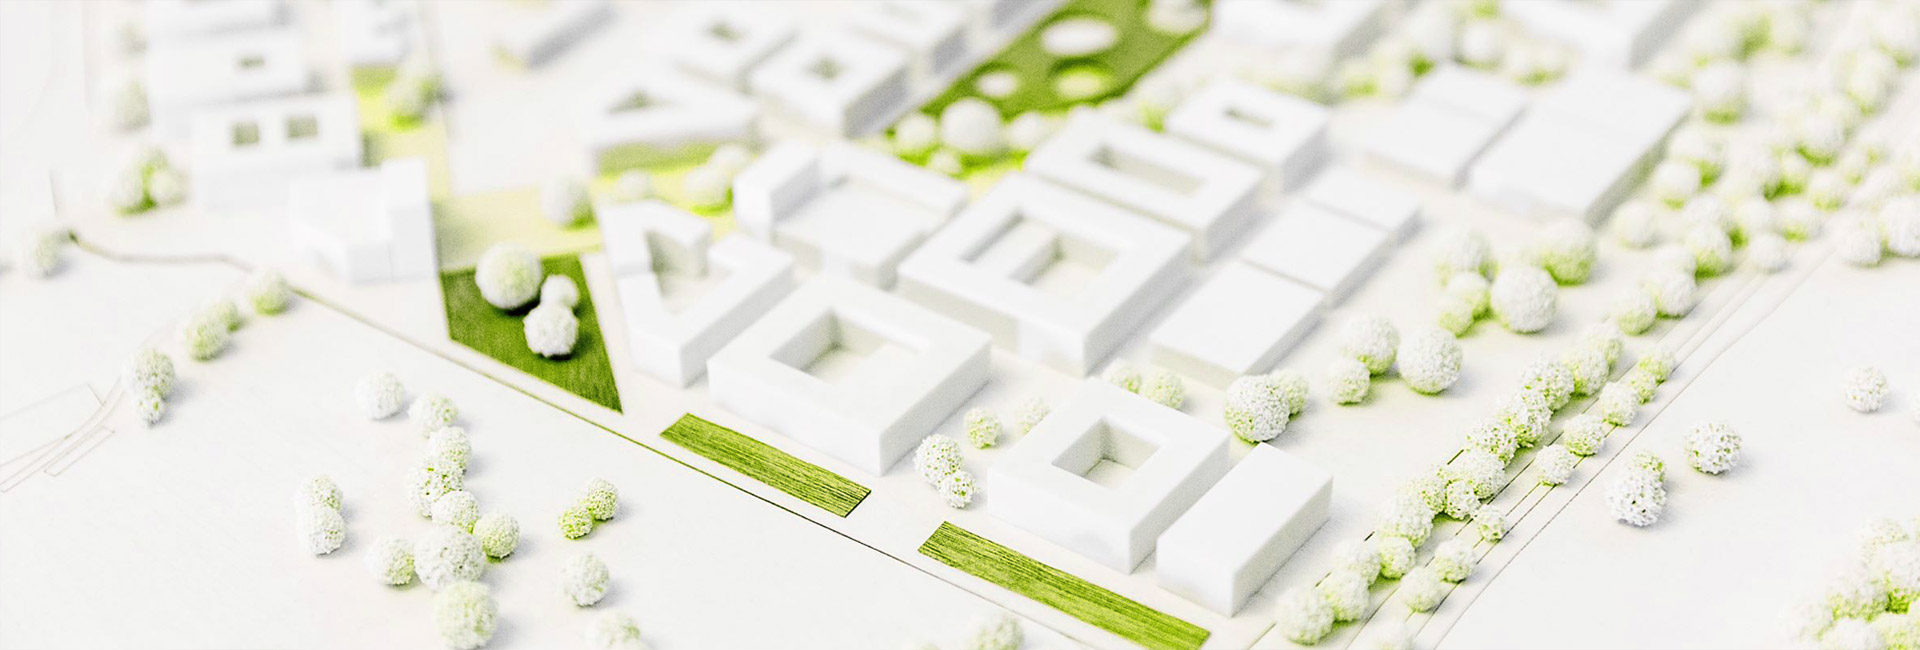 Ausschnitt aus dem Architektur Model der Technischen Universität Nürnberg, grün, weiß